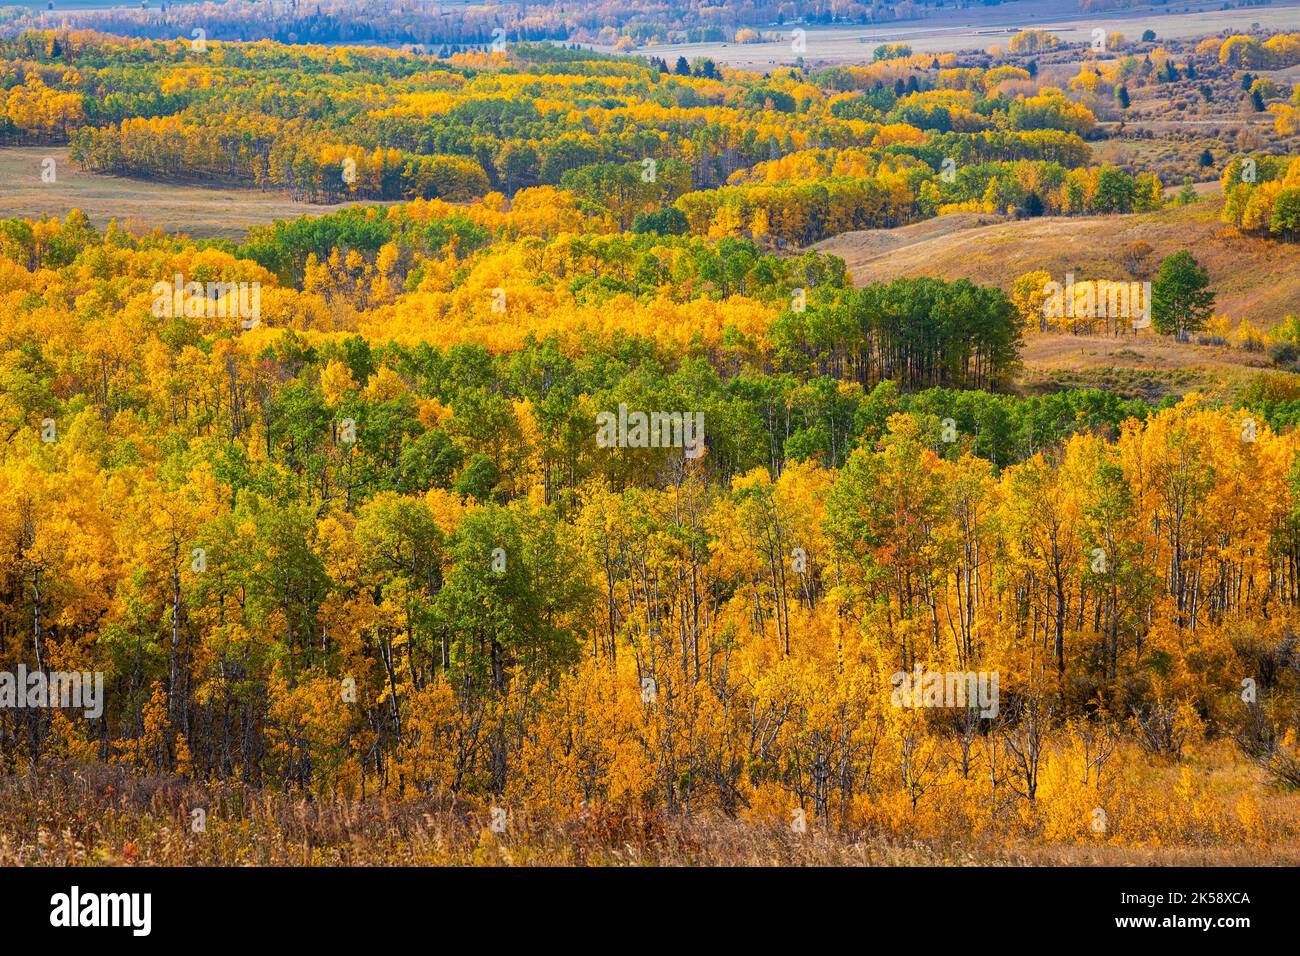 Superbes couleurs automnales des prairies et des paysages forestiers de l'Alberta, près de Calgary et de Banff, dans les Rocheuses canadiennes du Canada. Banque D'Images